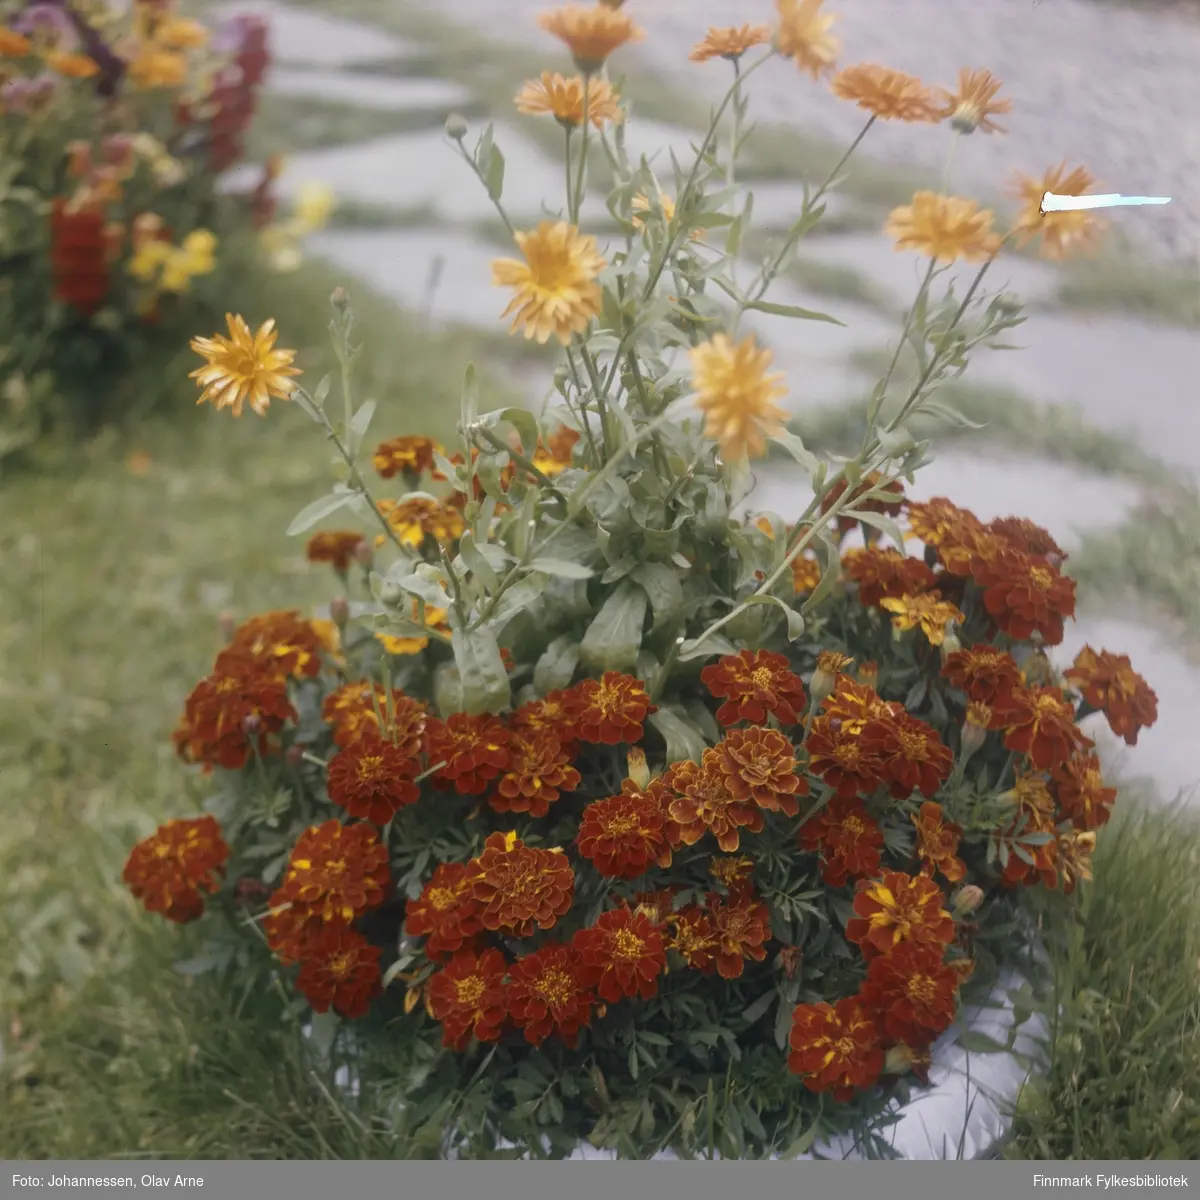 Foto av blomsterpotte på ukjent sted

Antagelig Finnmark

Trolig tatt på 1970-tallet